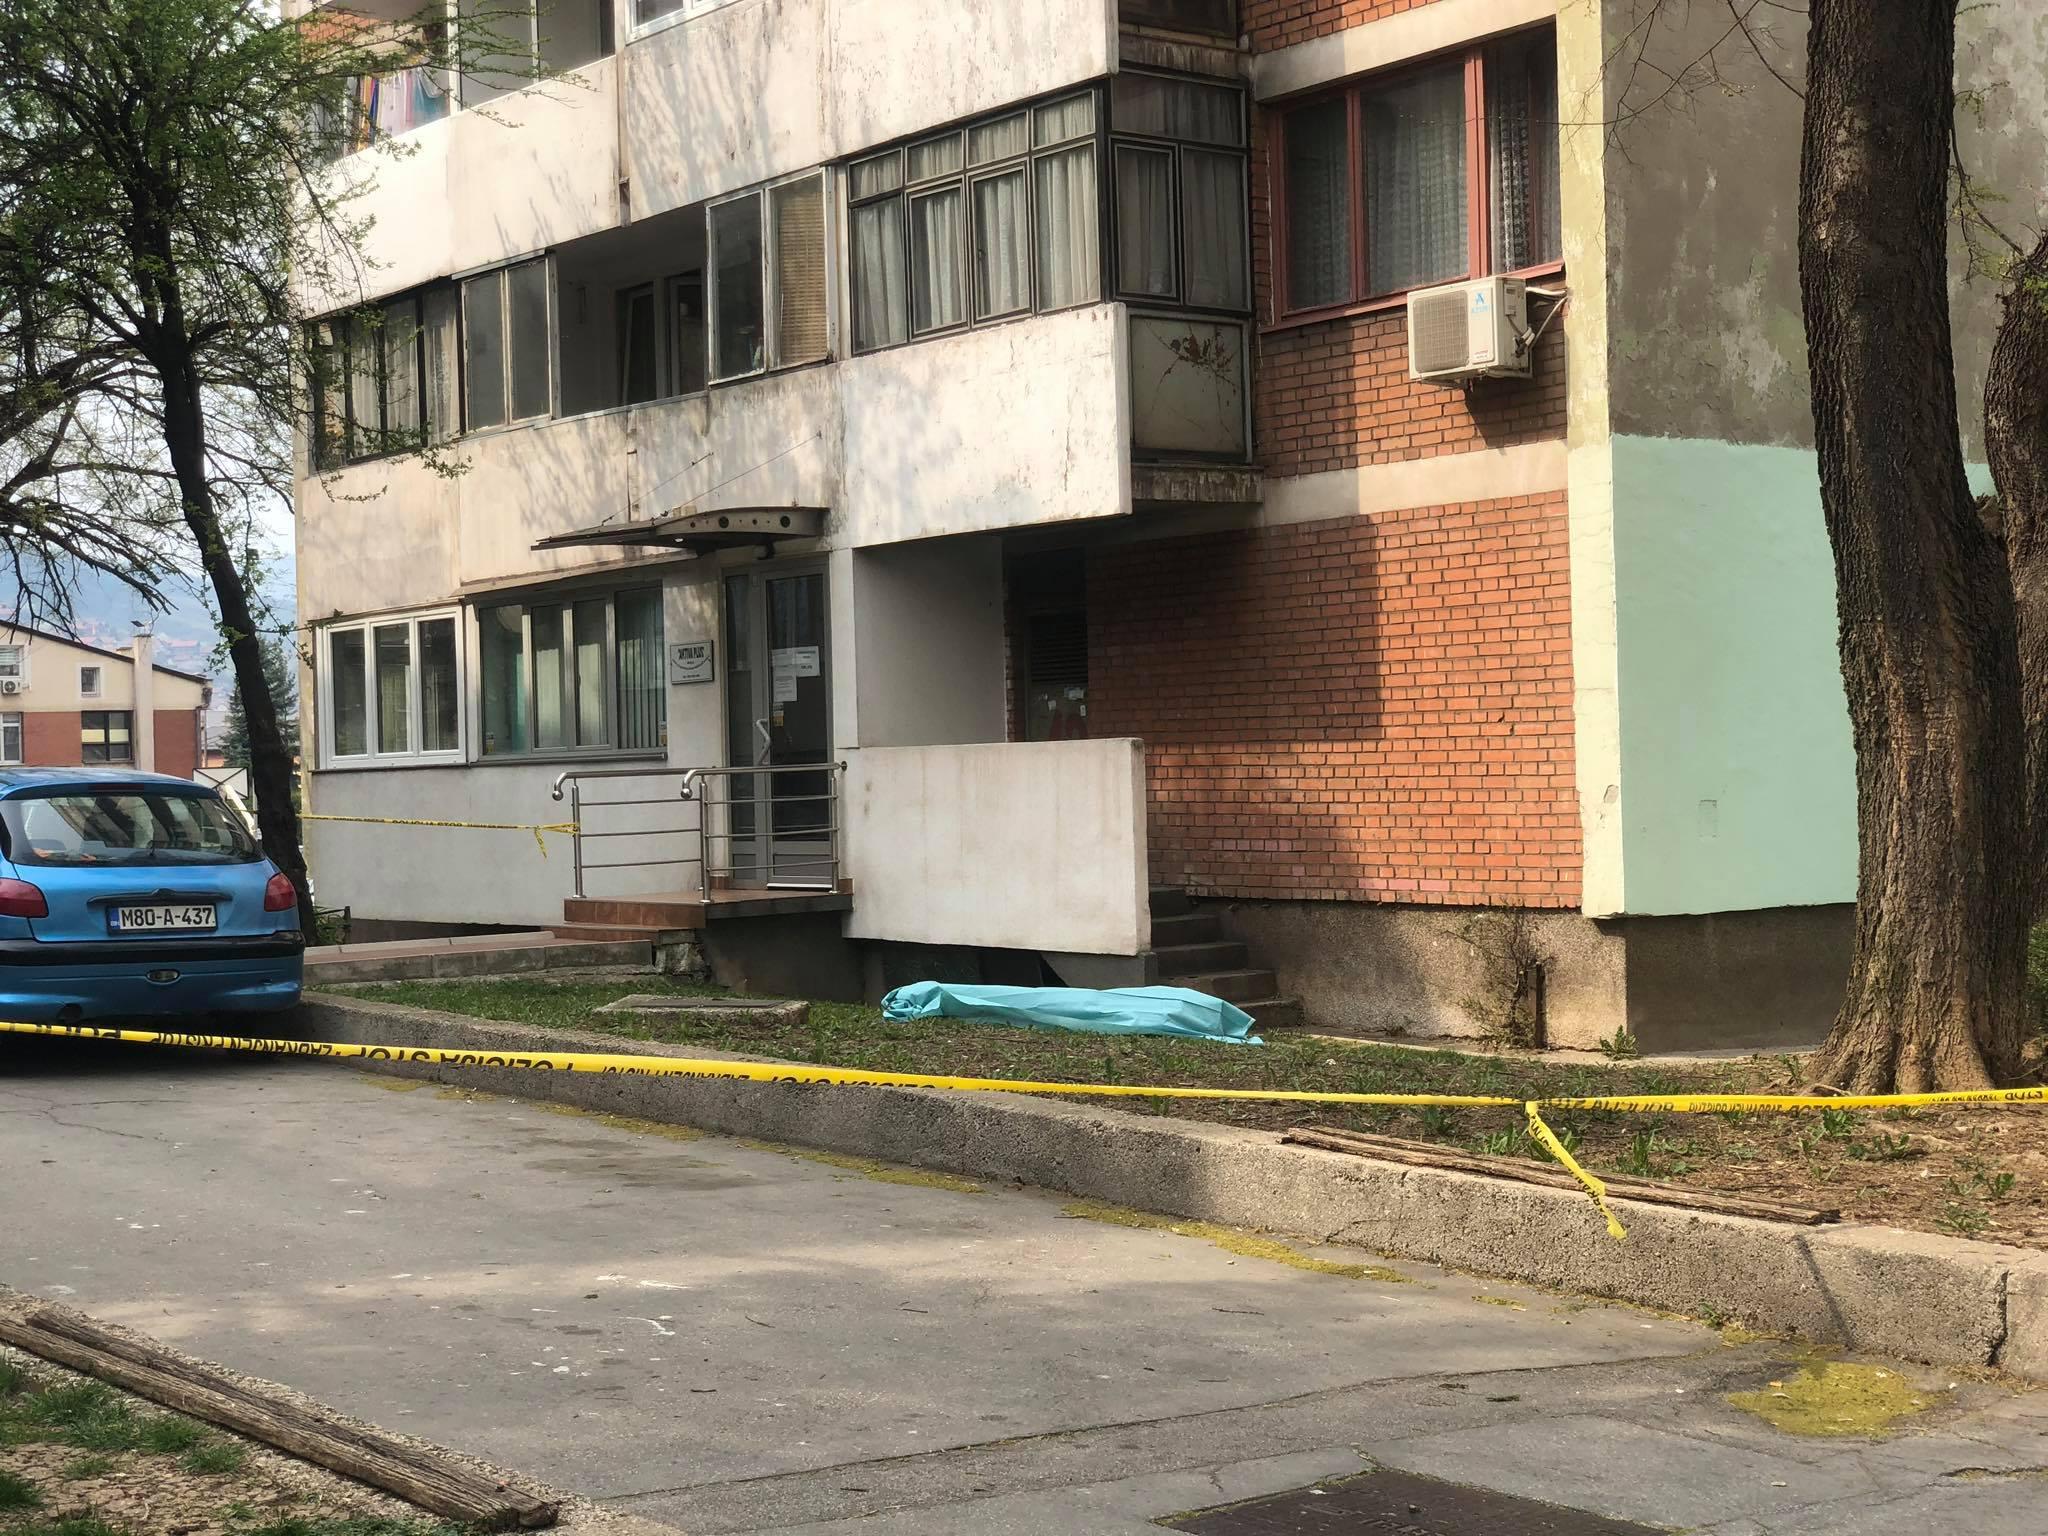 Samoubistvo u Zenici: Žena skočila u smrt sa 7. sprata zgrade?